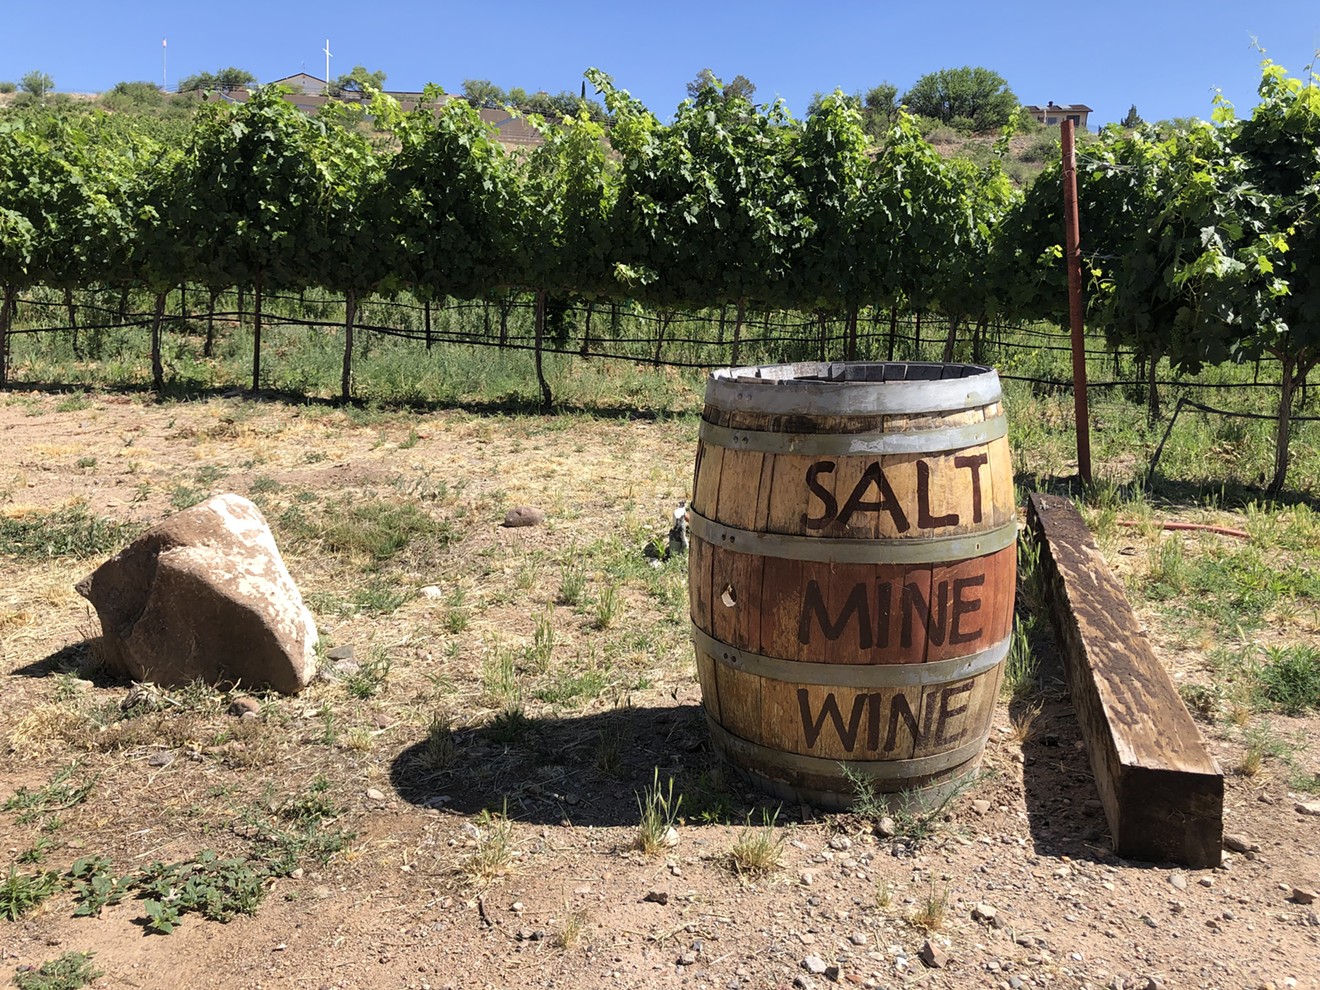 Salt Mine Wine, a small vineyard in Camp Verde that focuses on Italian grape varieties.